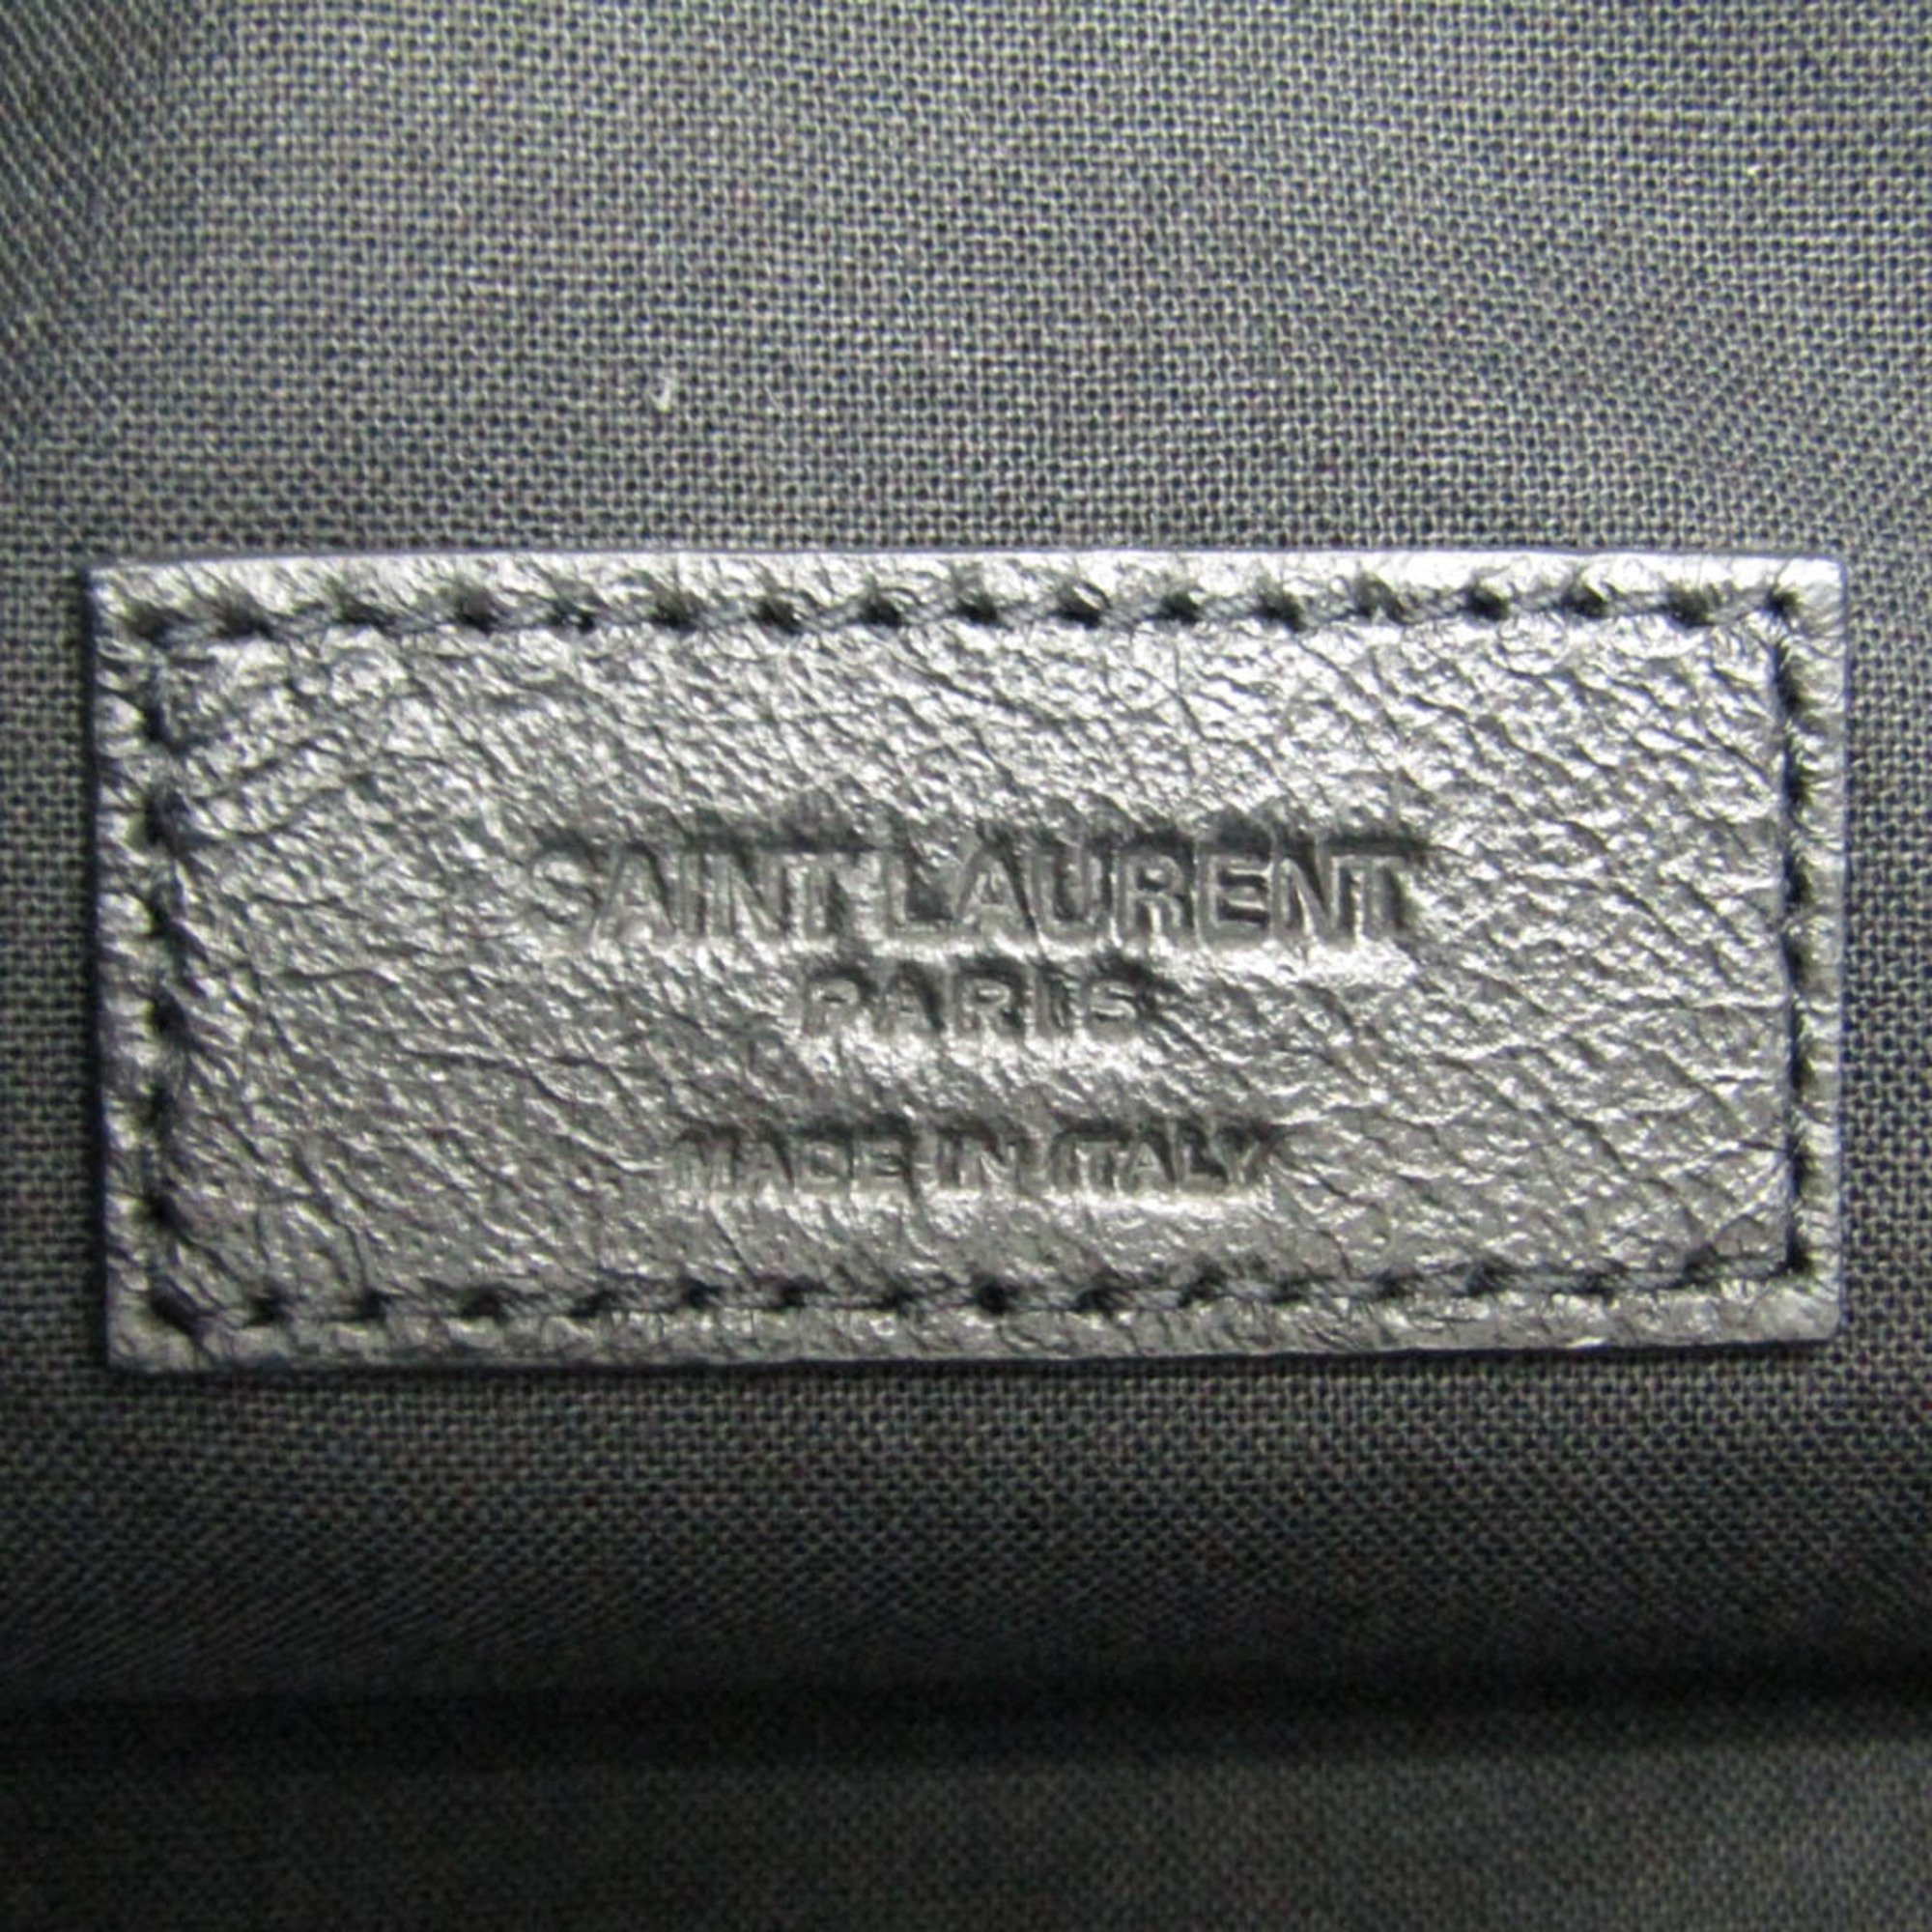 Saint Laurent Women's Leather Tote Bag Black